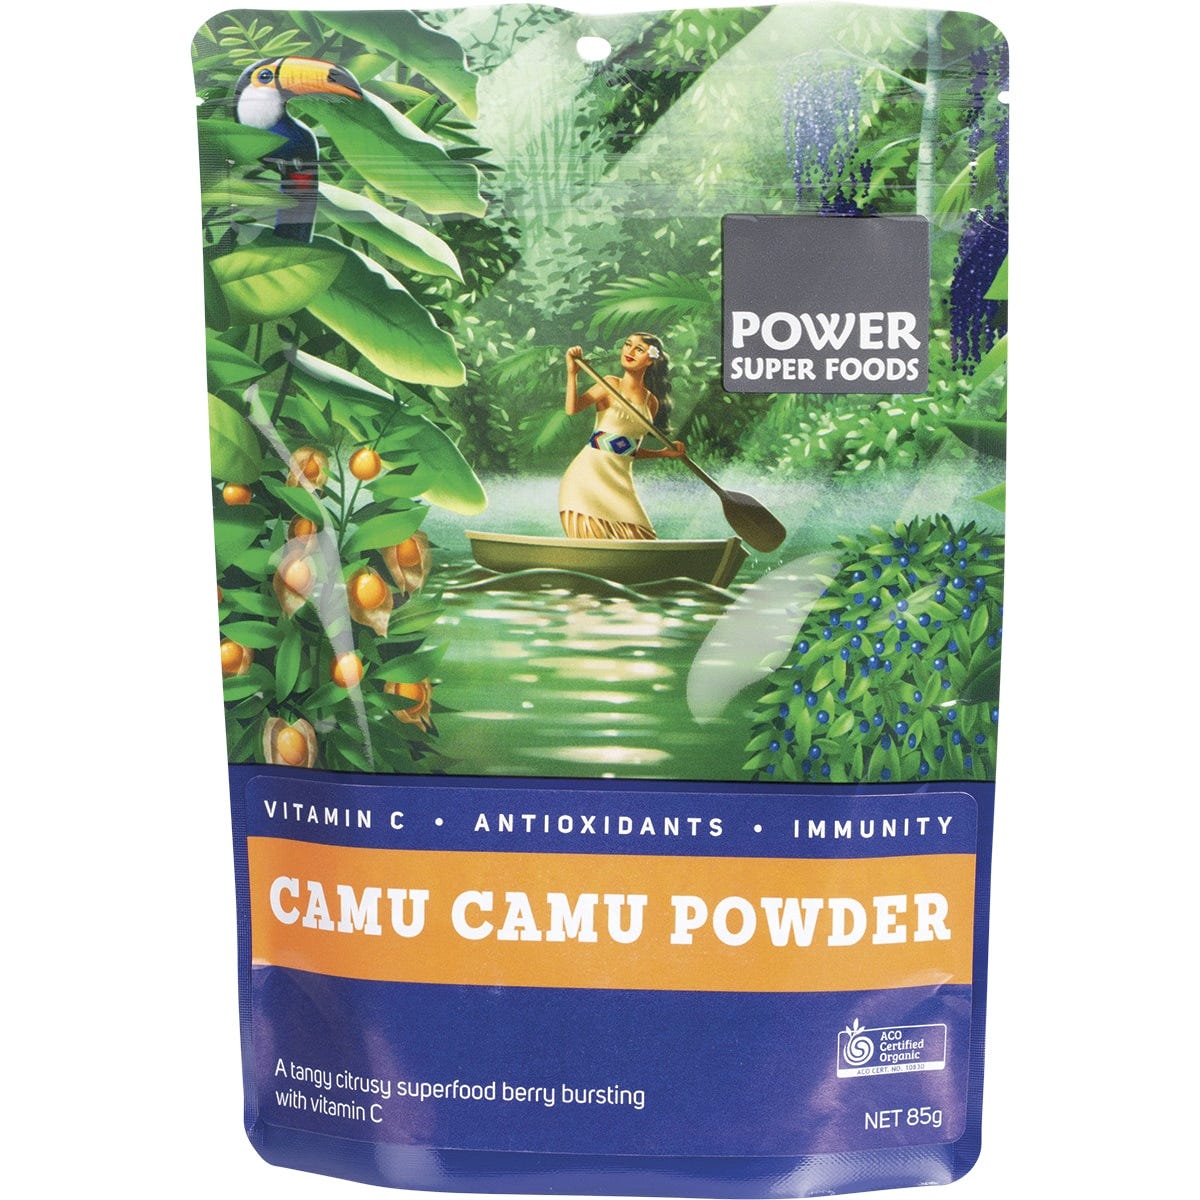 Camu Camu Powder The Origin Series